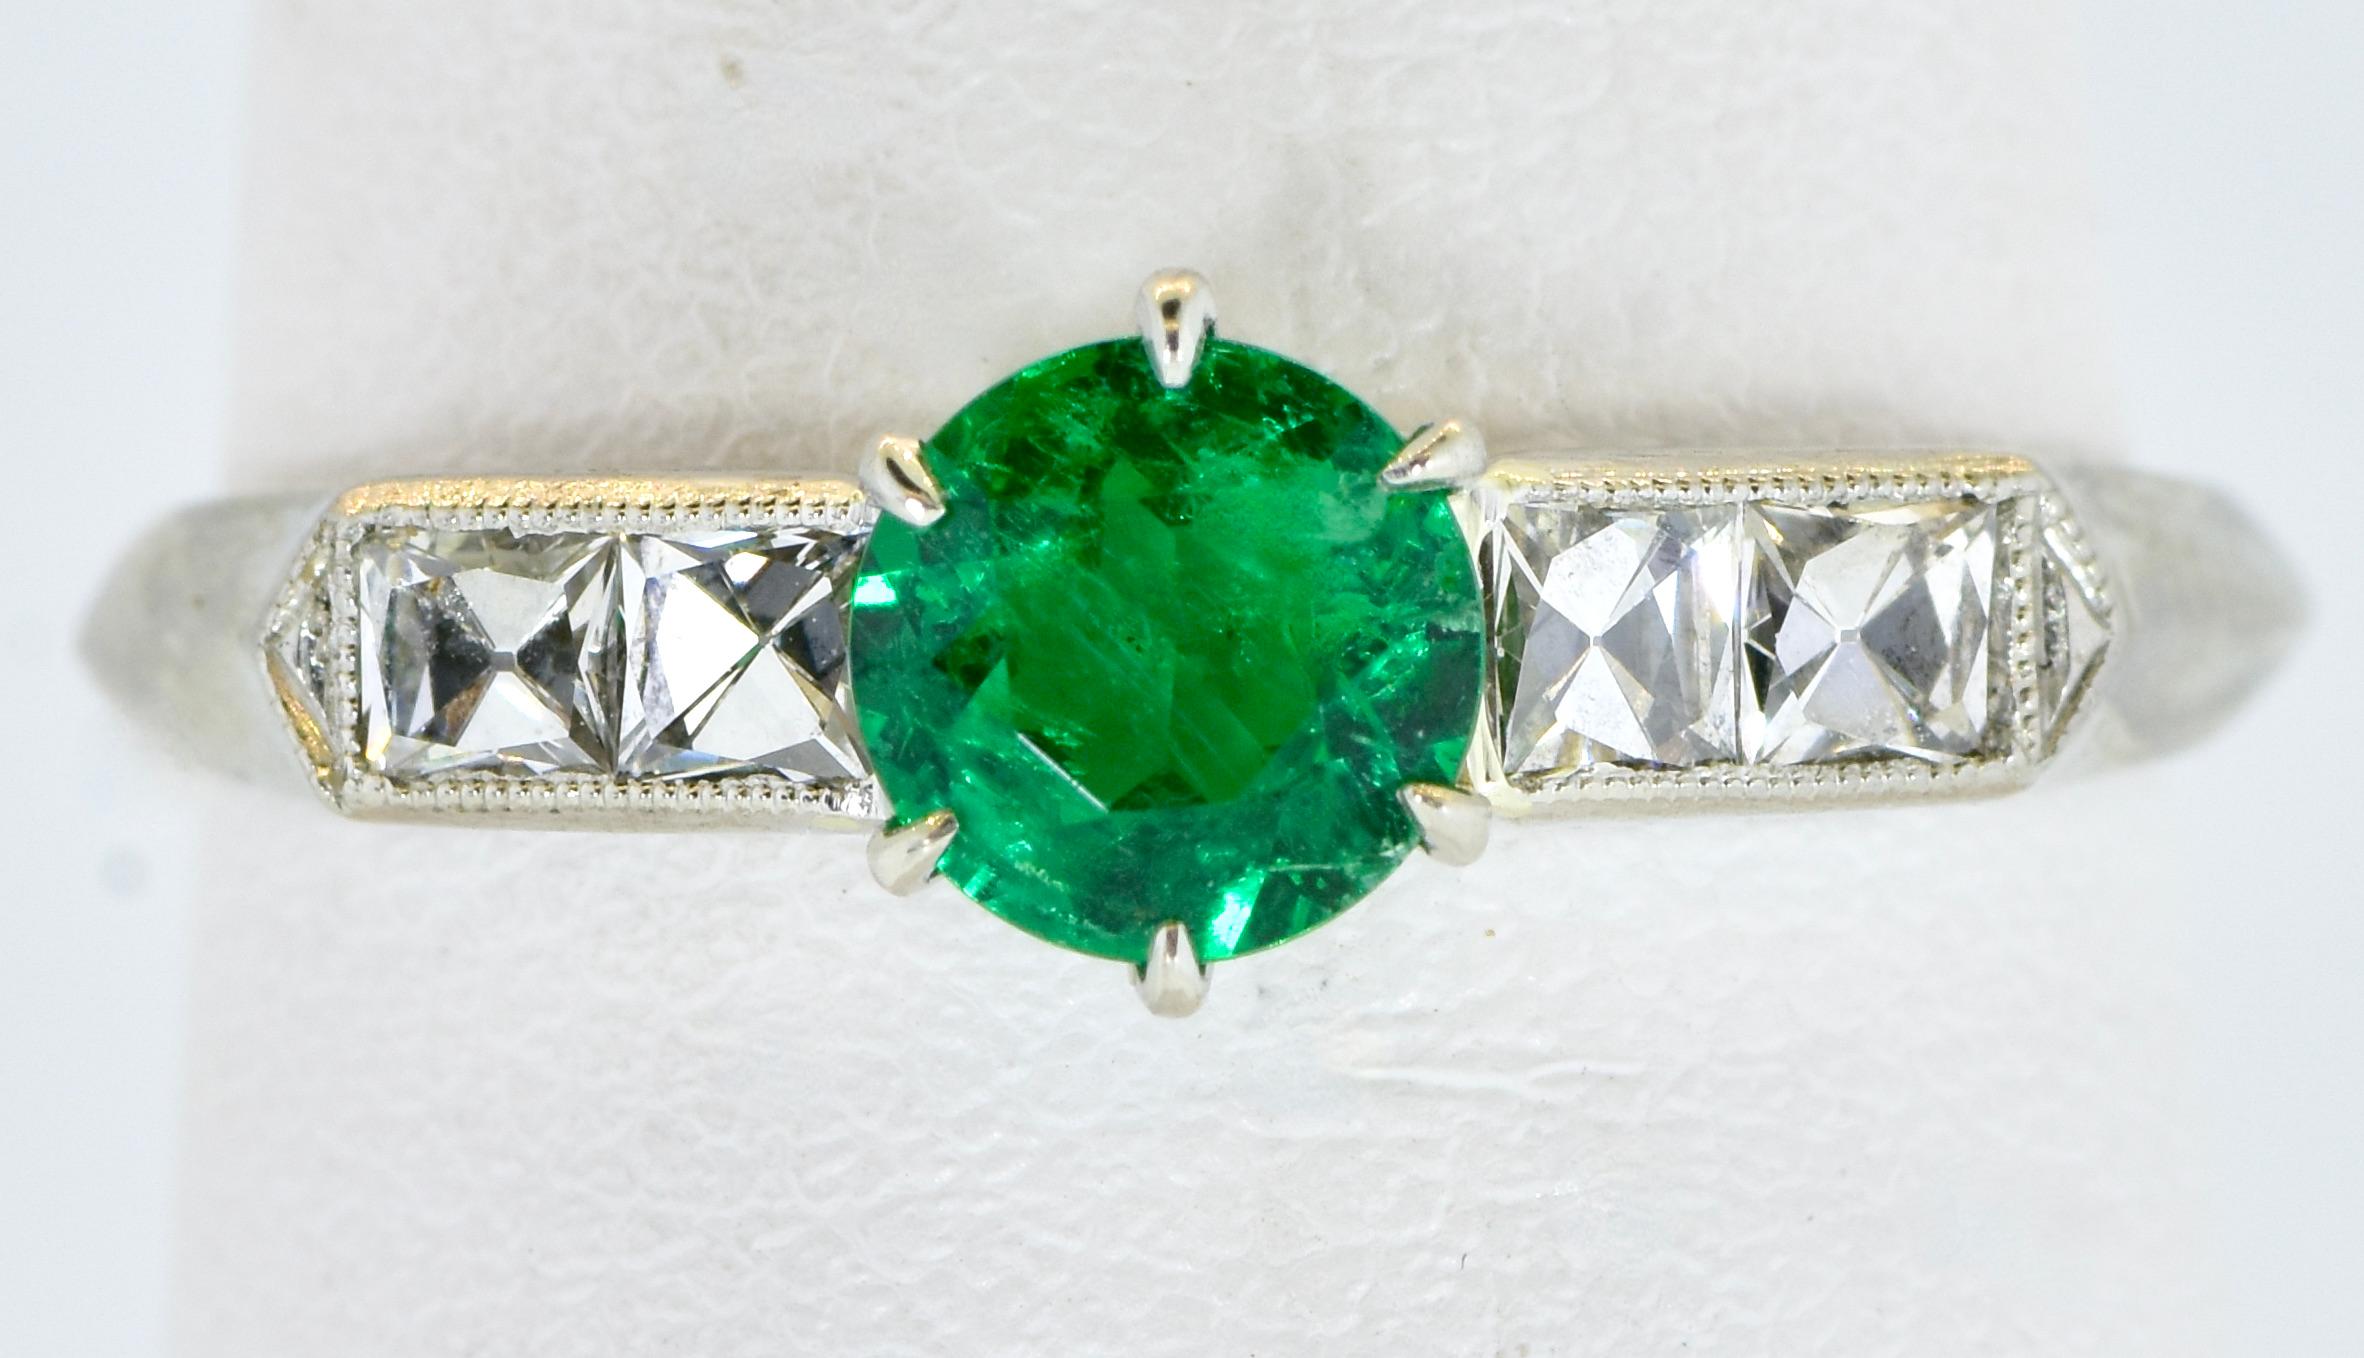 Kolumbianischer Smaragd-, Diamant- und Platinring im antiken Art-Déco-Stil, um 1930.  Der Mittelstein wiegt ca. 0,47 cts. und ist ein sehr feiner kolumbianischer Smaragd, der eine gleichmäßig lebendige, rein grüne Farbe aufweist.  Der Stein ist hell